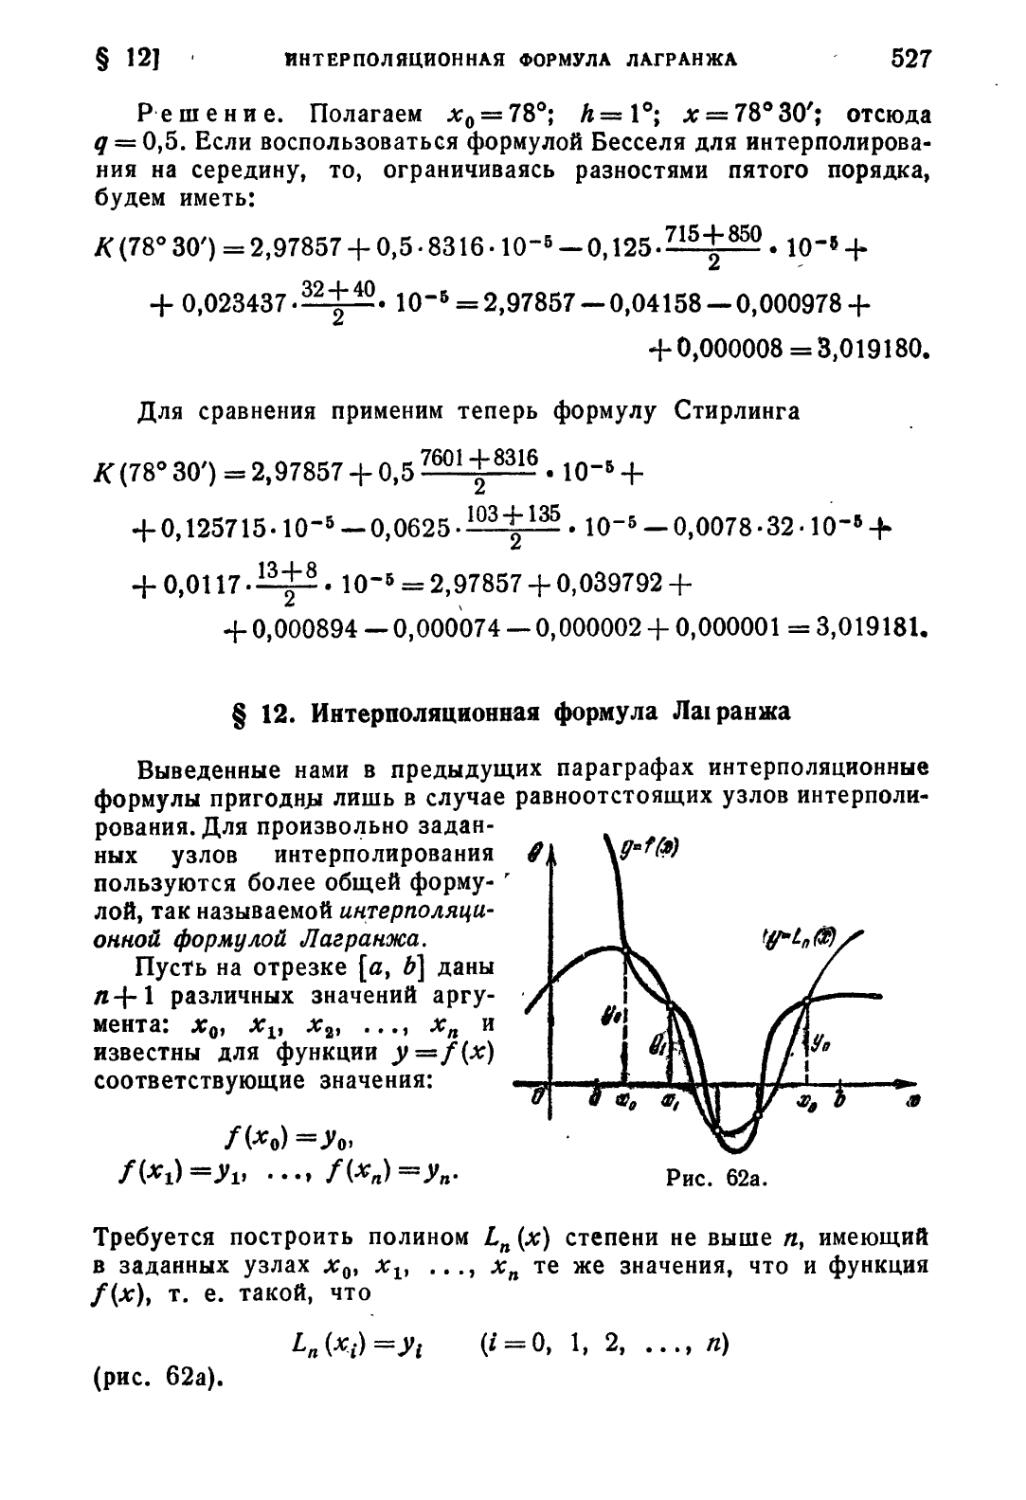 § 12. Интерполяционная формула Лагранжа